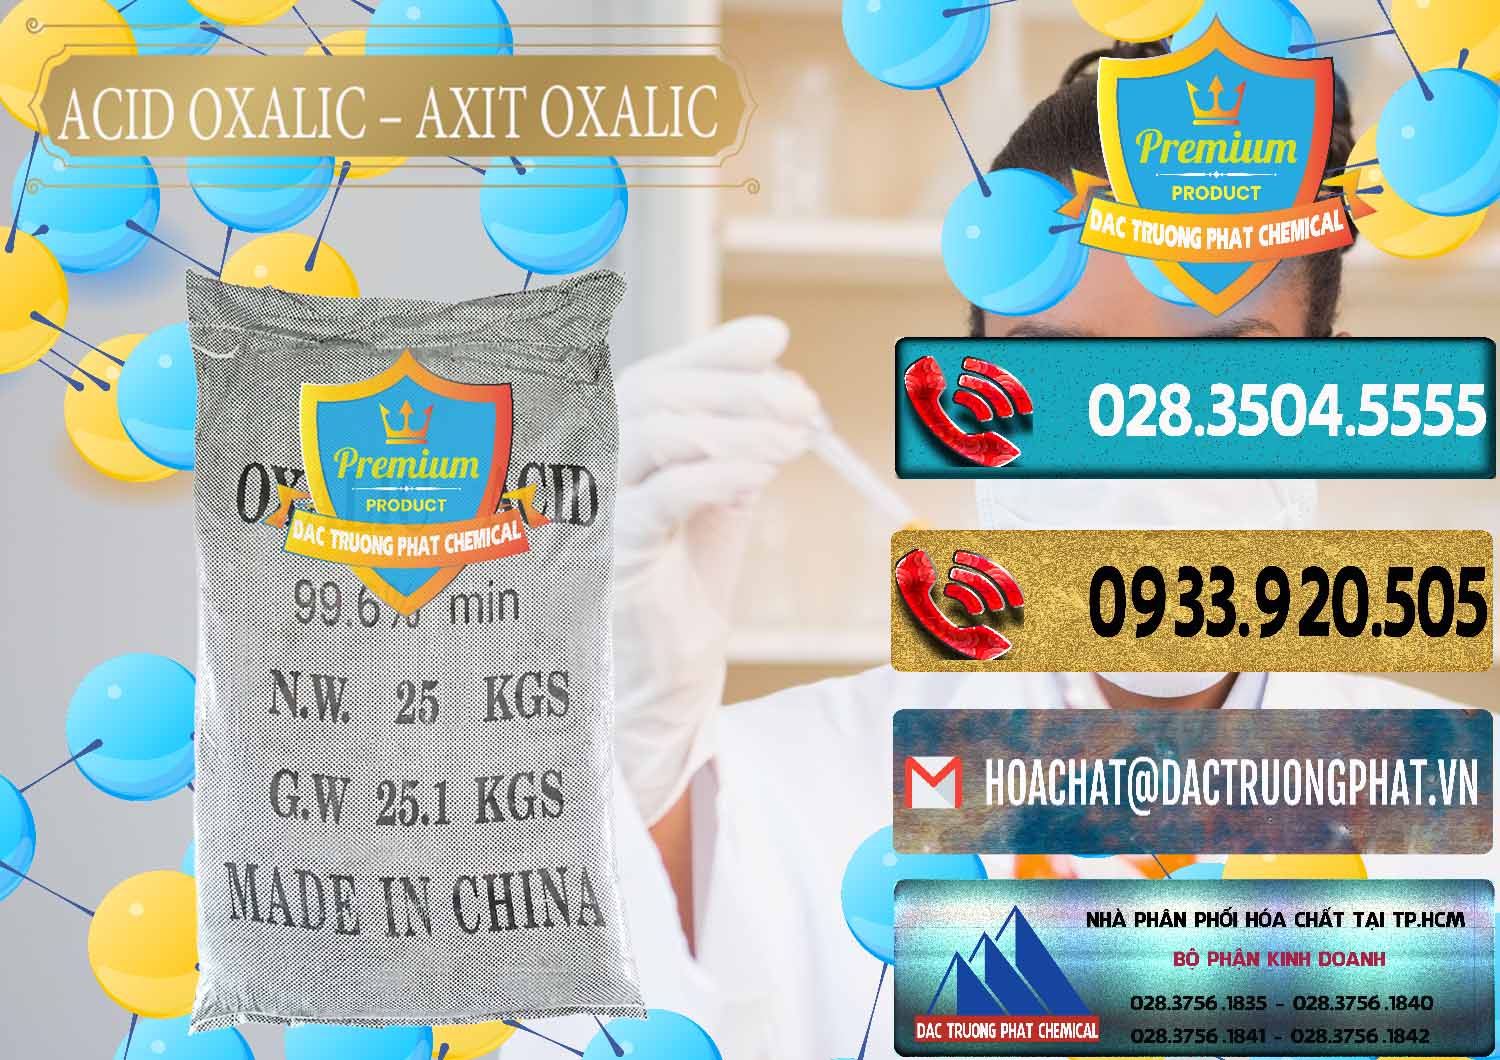 Cty bán & phân phối Acid Oxalic – Axit Oxalic 99.6% Trung Quốc China - 0014 - Nơi cung cấp & phân phối hóa chất tại TP.HCM - hoachatdetnhuom.com